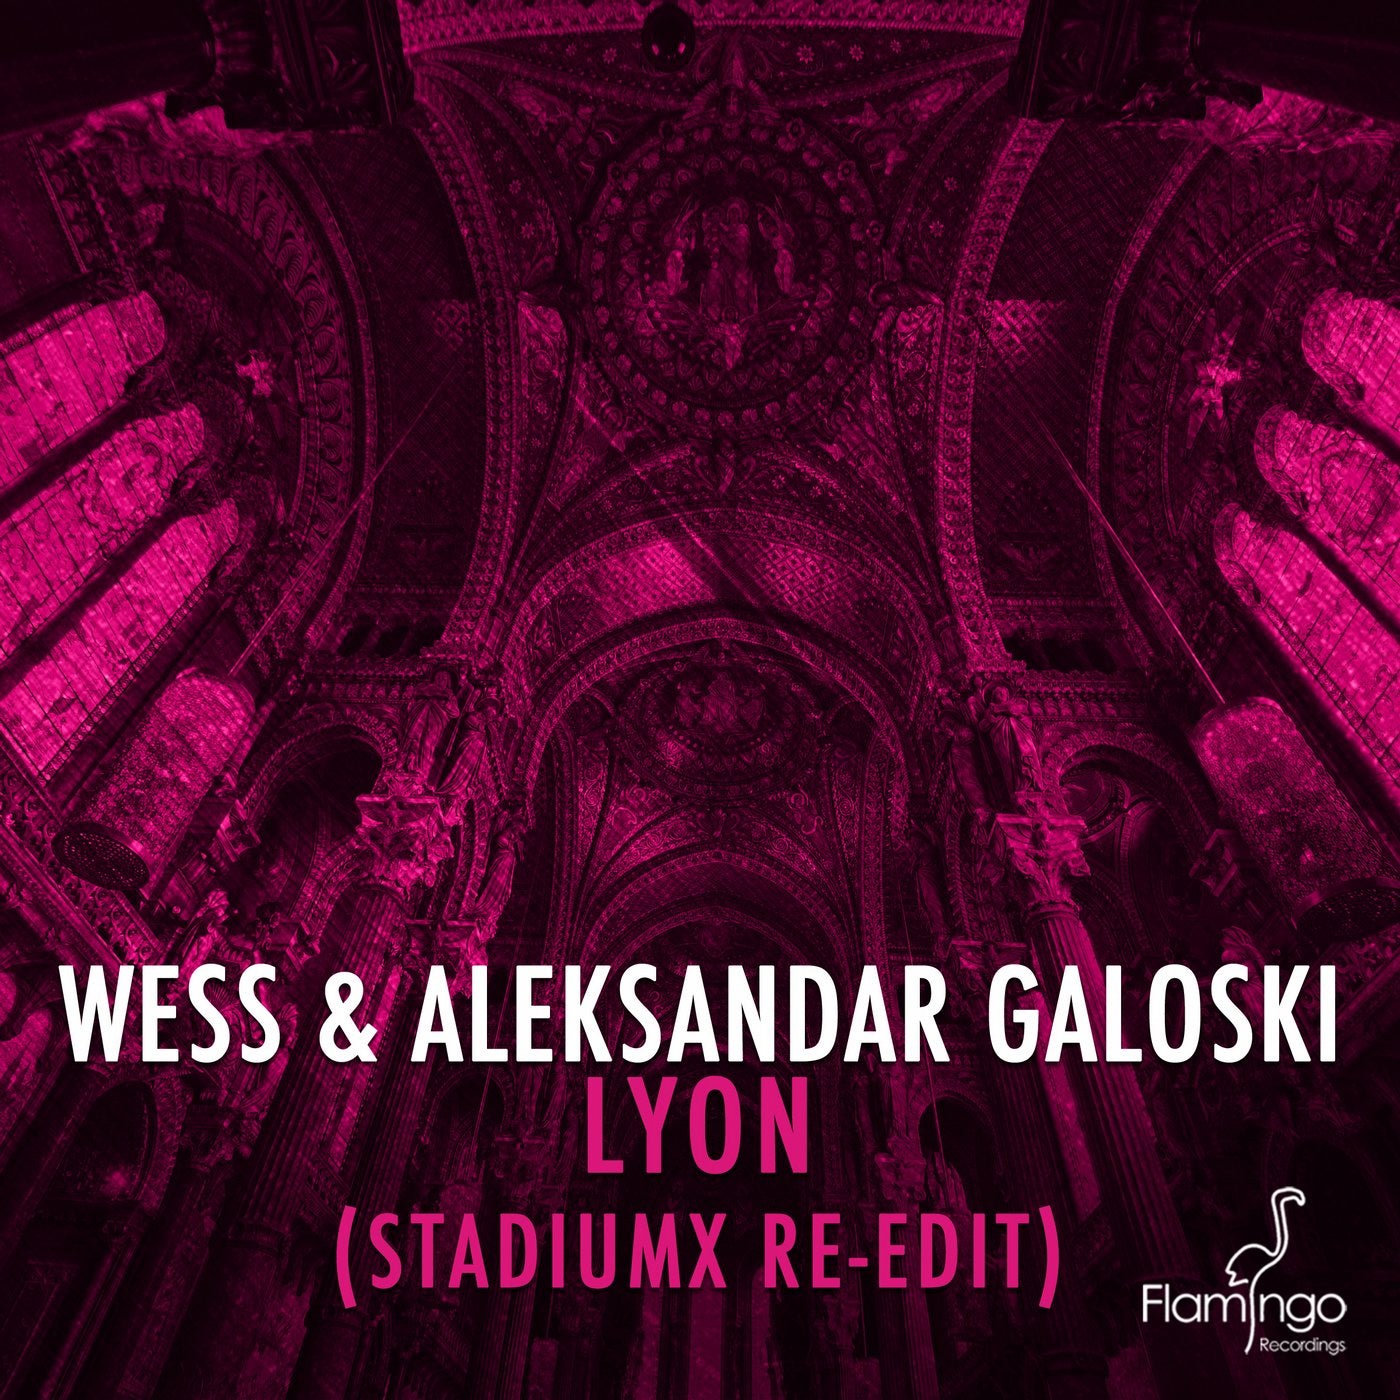 Lyon - Stadiumx Re-Edit